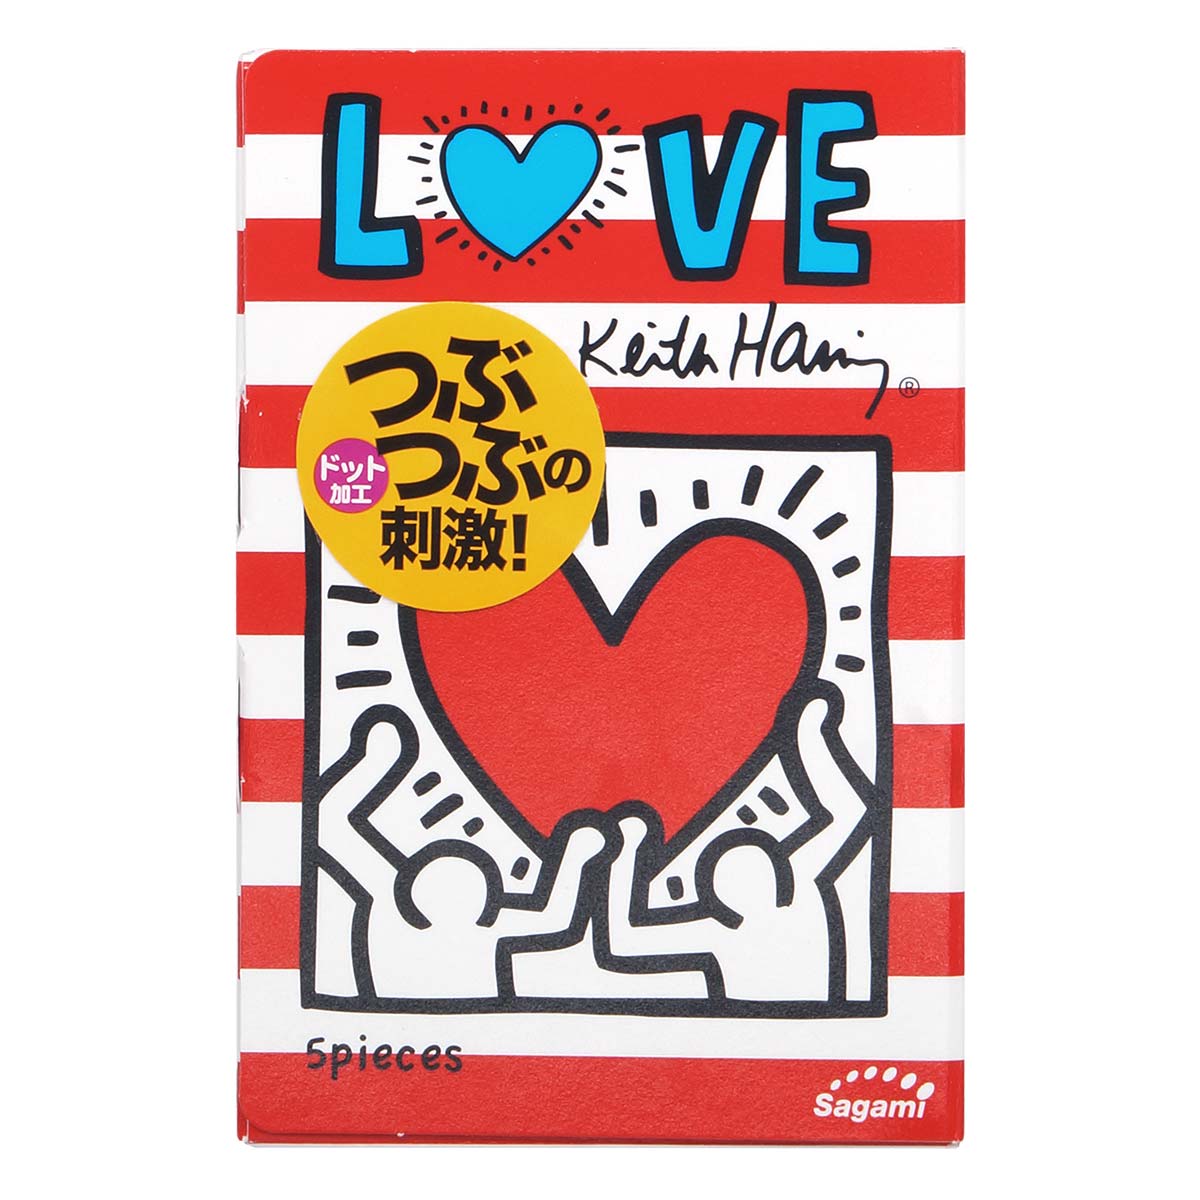 Sagami LOVE Keith Haring Dots 5's Pack Latex Condom-p_2